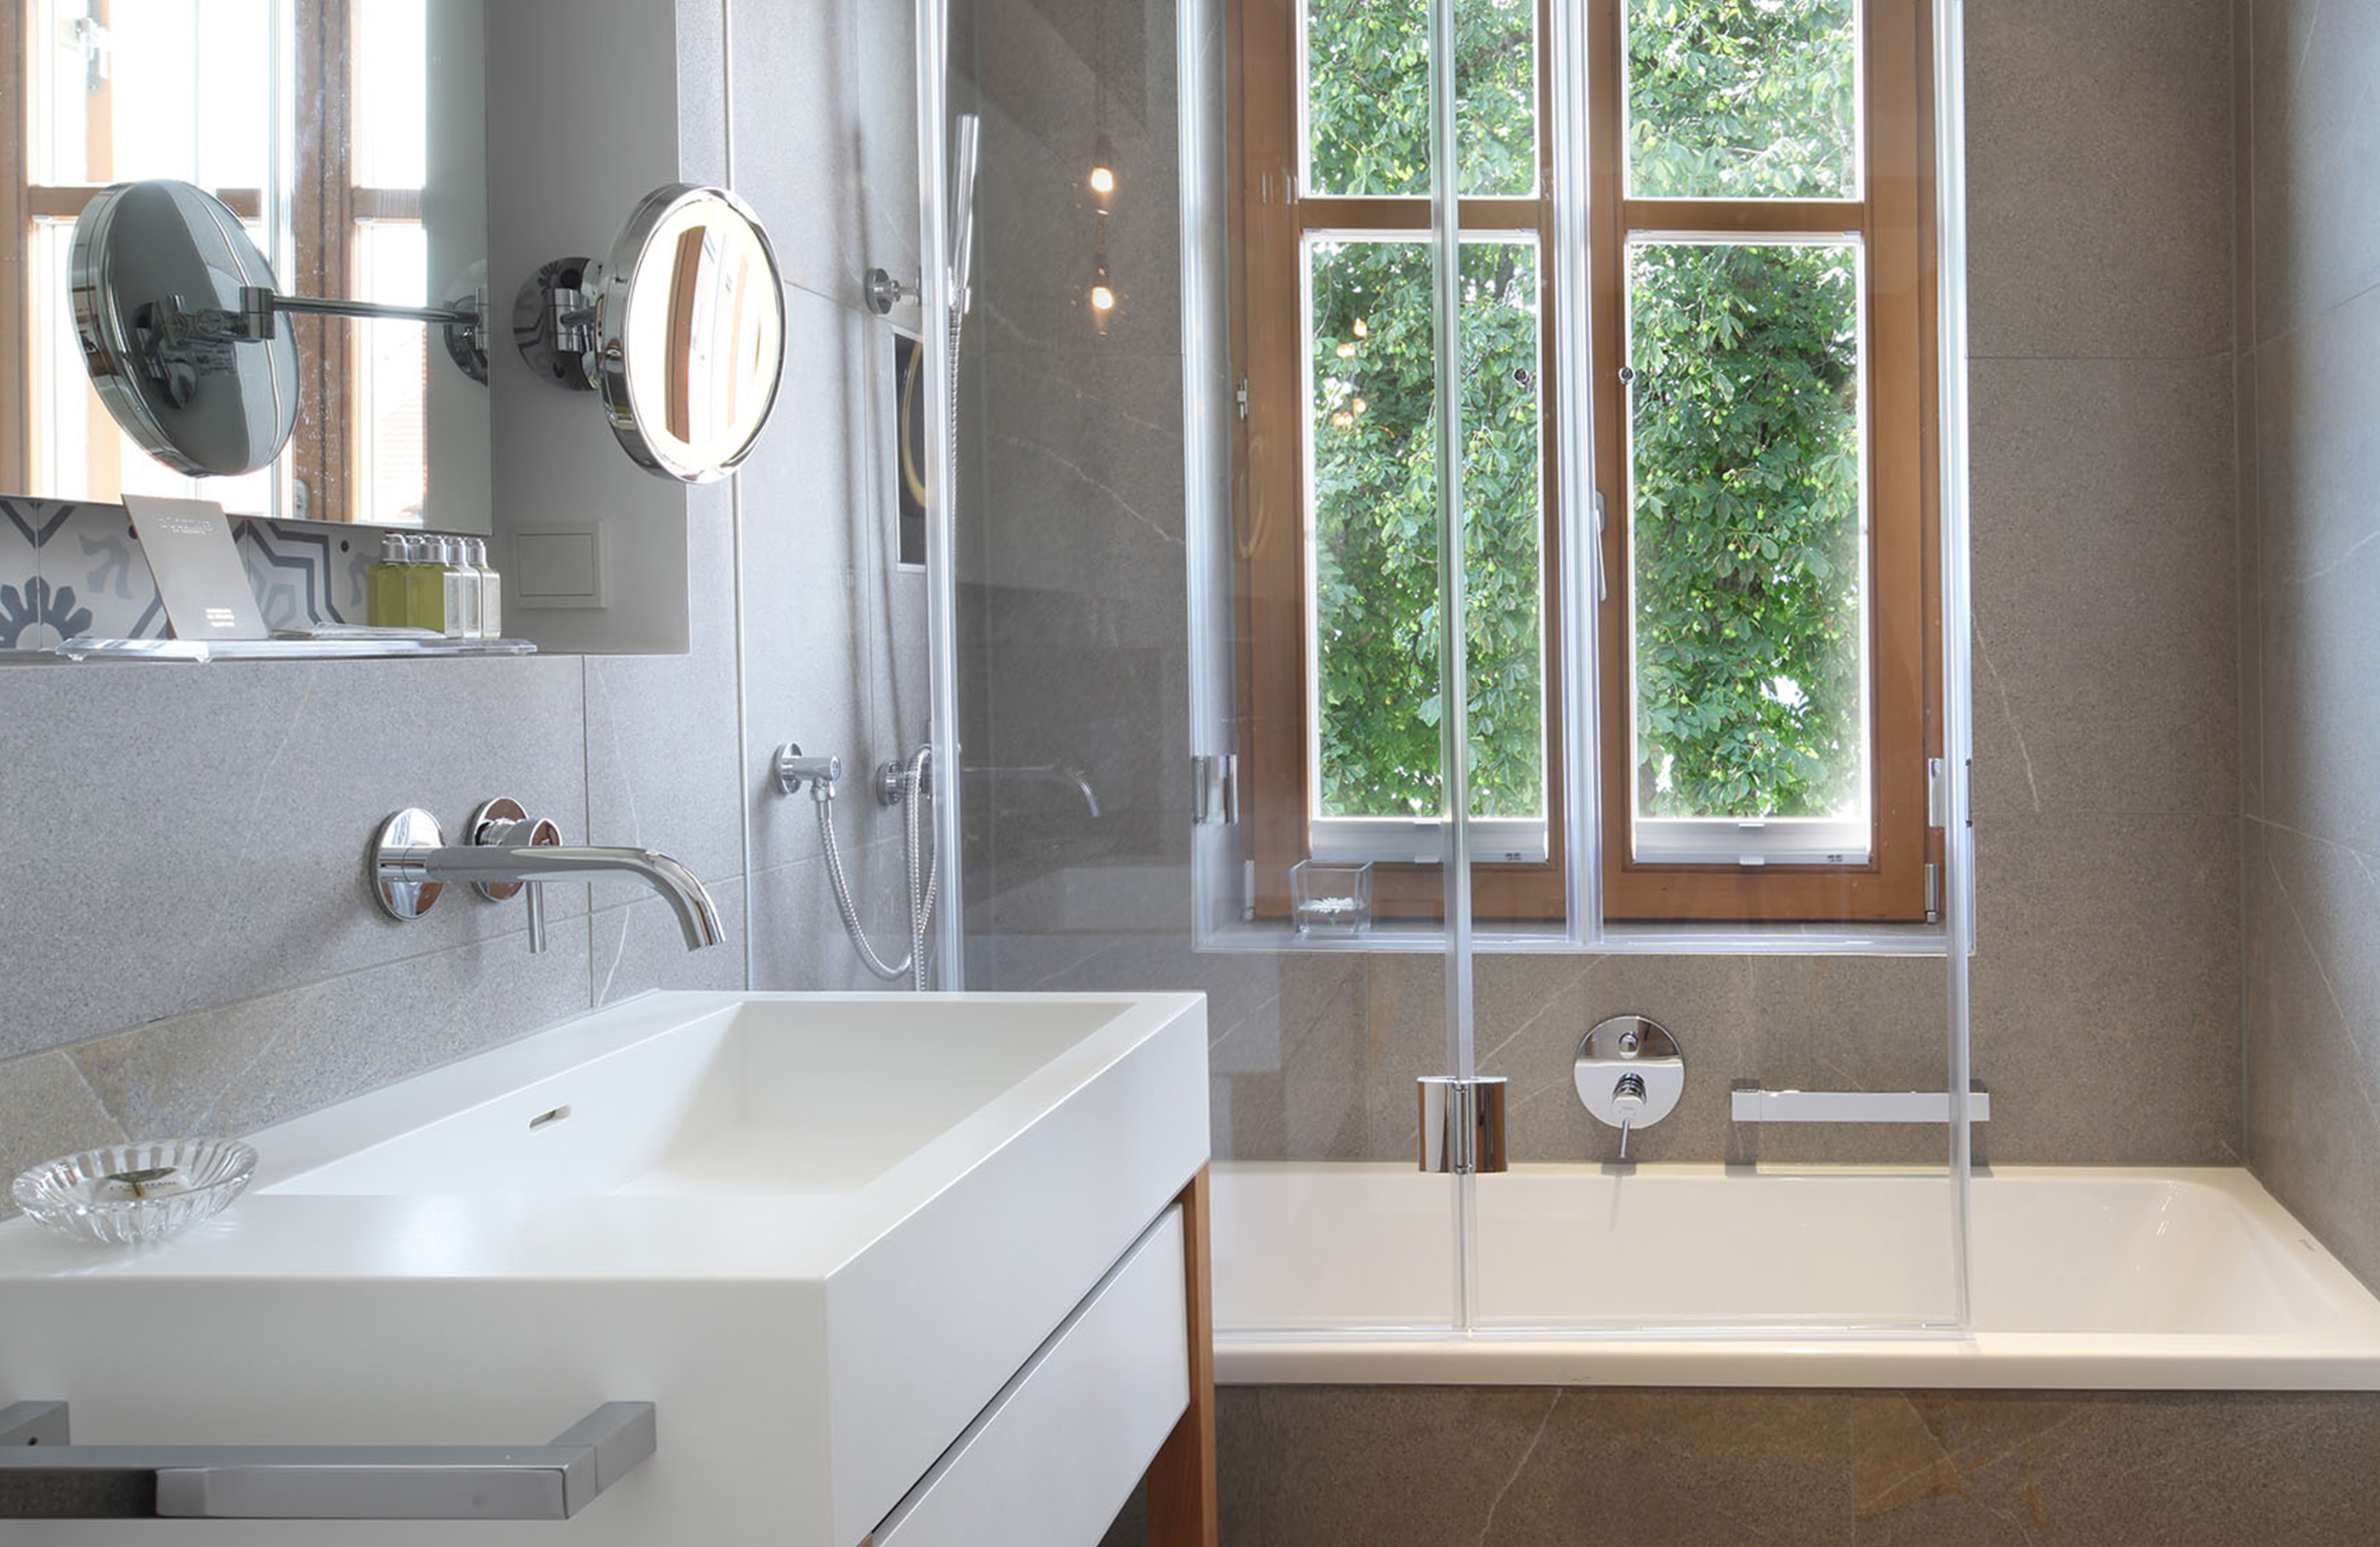 Blick in ein Badezimmer mit Duschwanne, hellem Fenster und einem großen Waschbecken